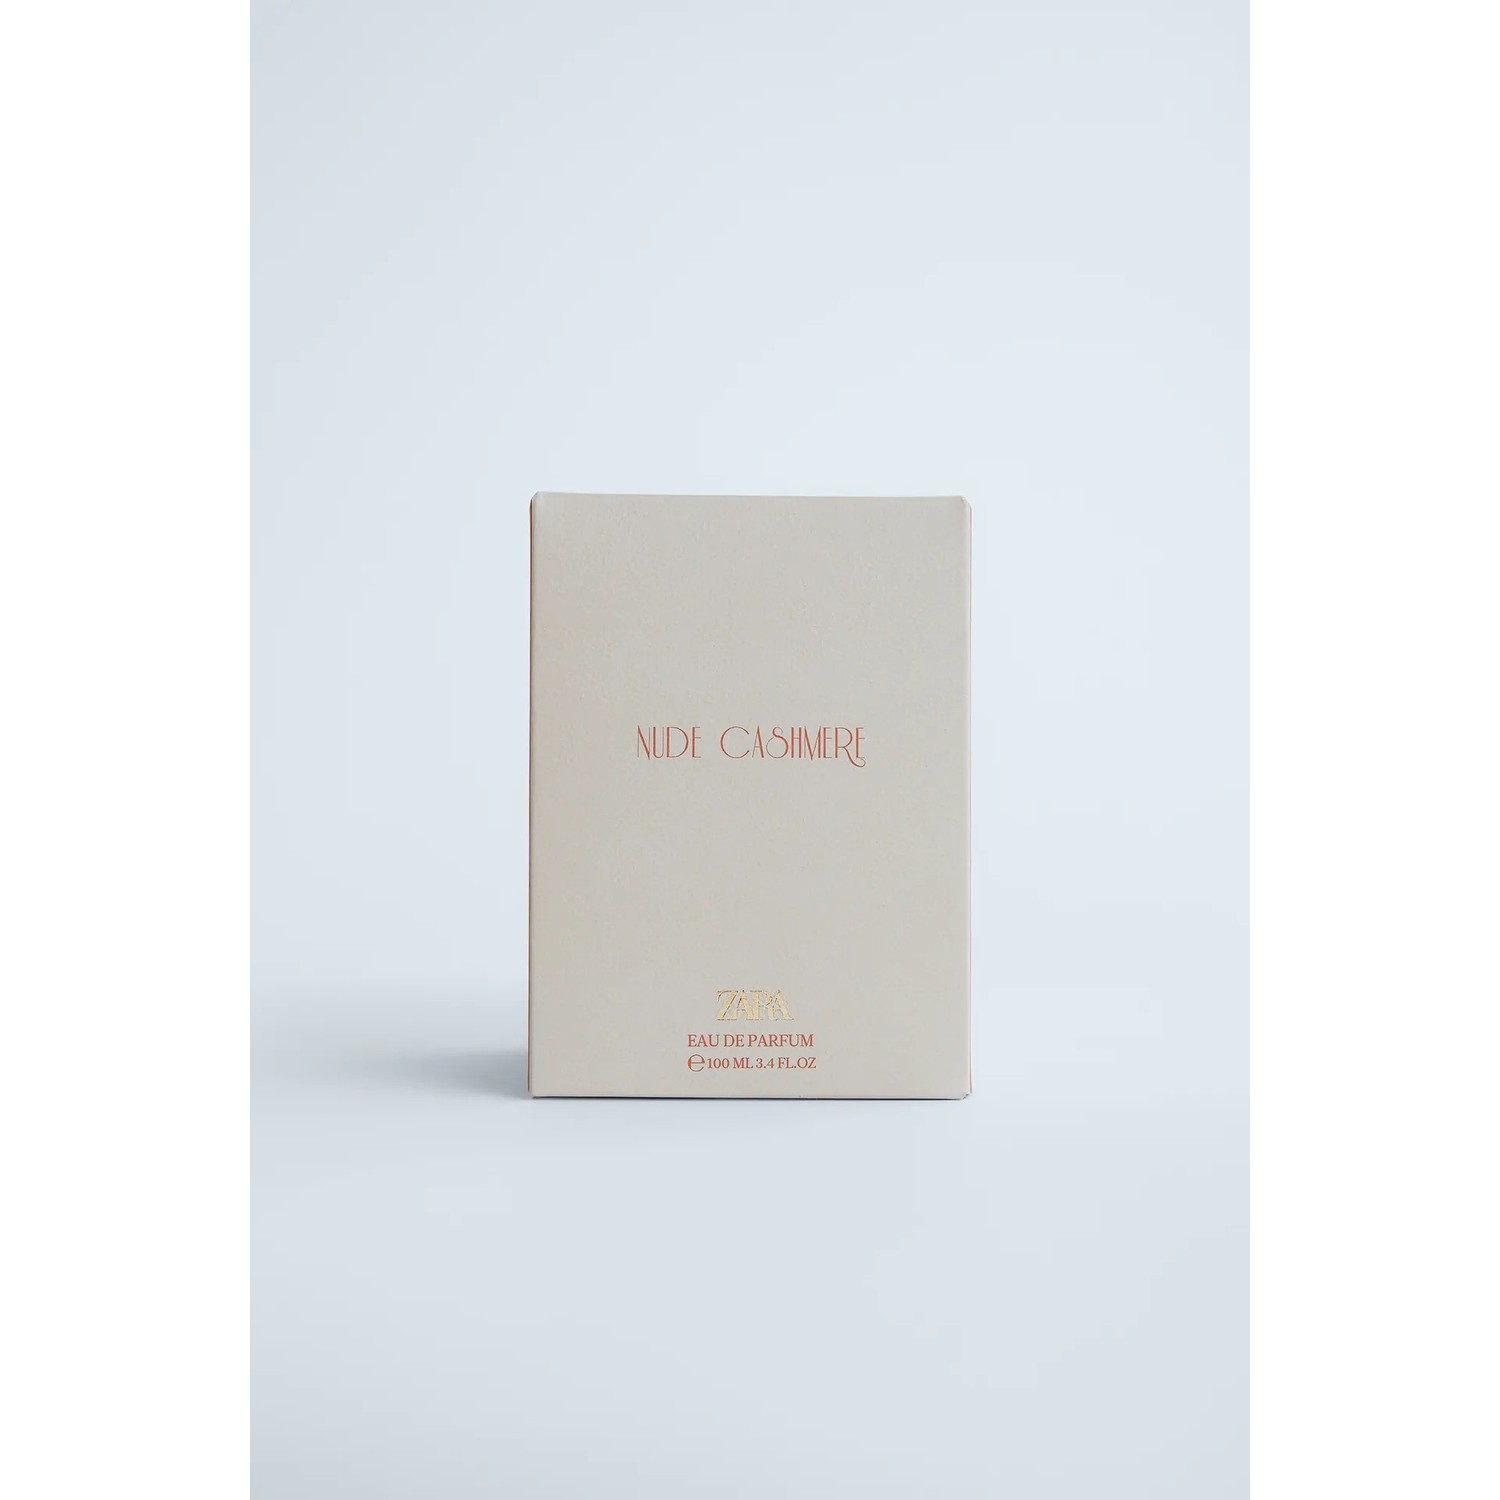 Zara Nude Bouquet + Cashmere Rose Edp 100 ml Kadın Parfüm 